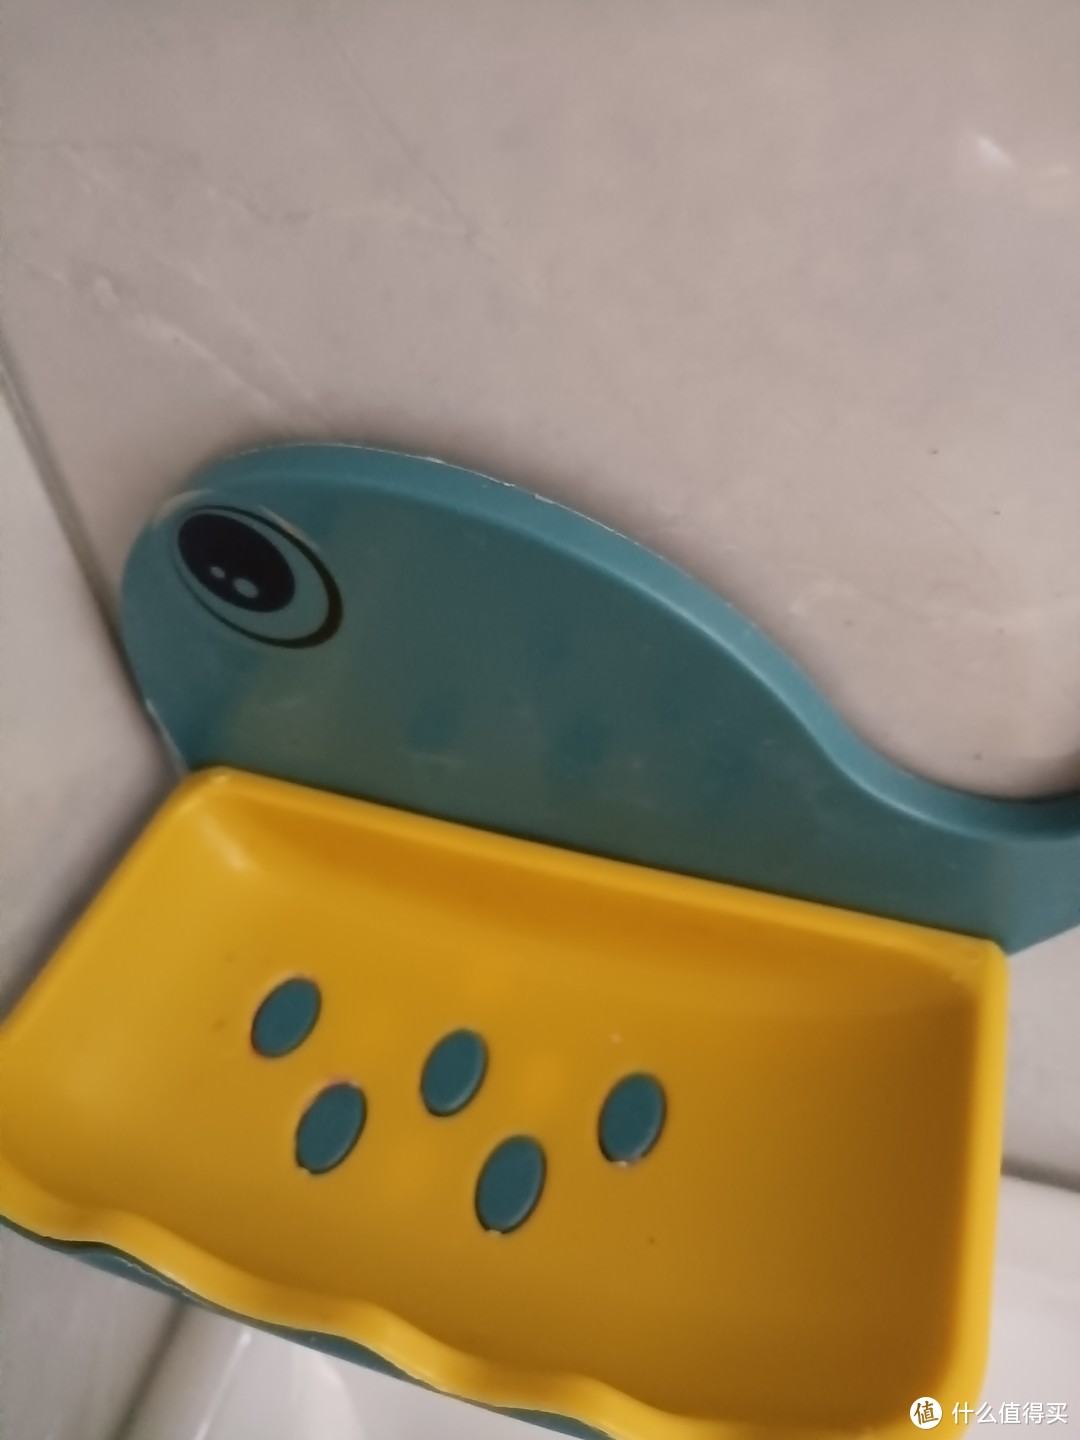 可爱的小鲸鱼创意肥皂盒。